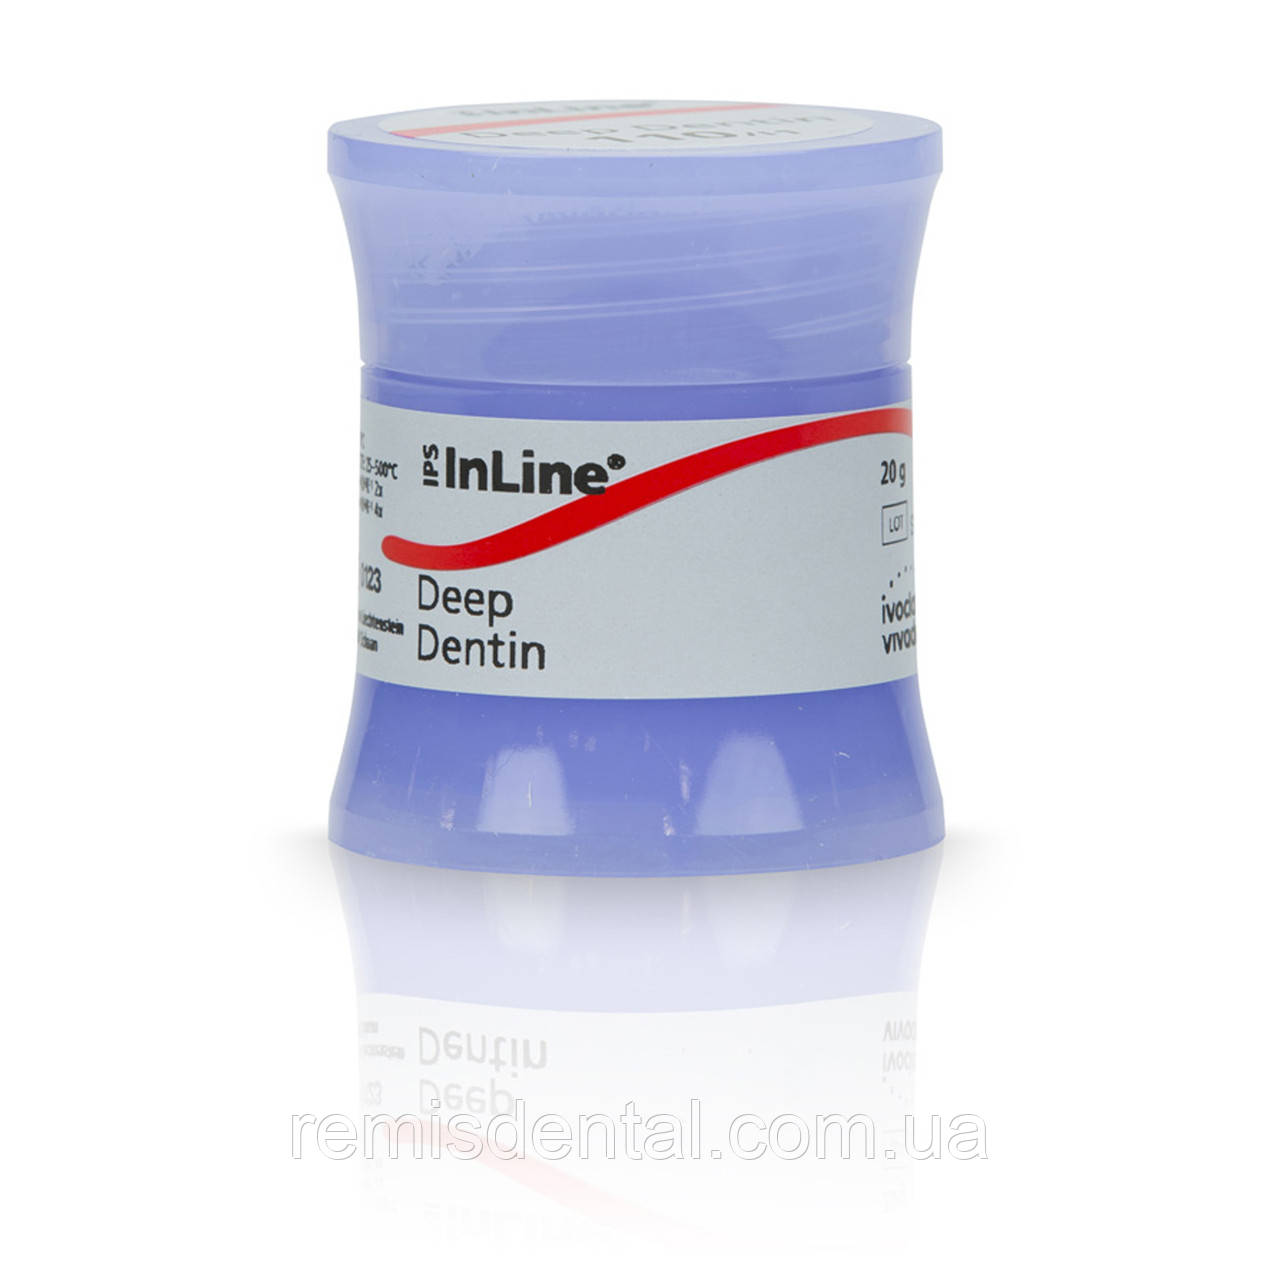 IPS InLine Deep Dentin A-D 20g